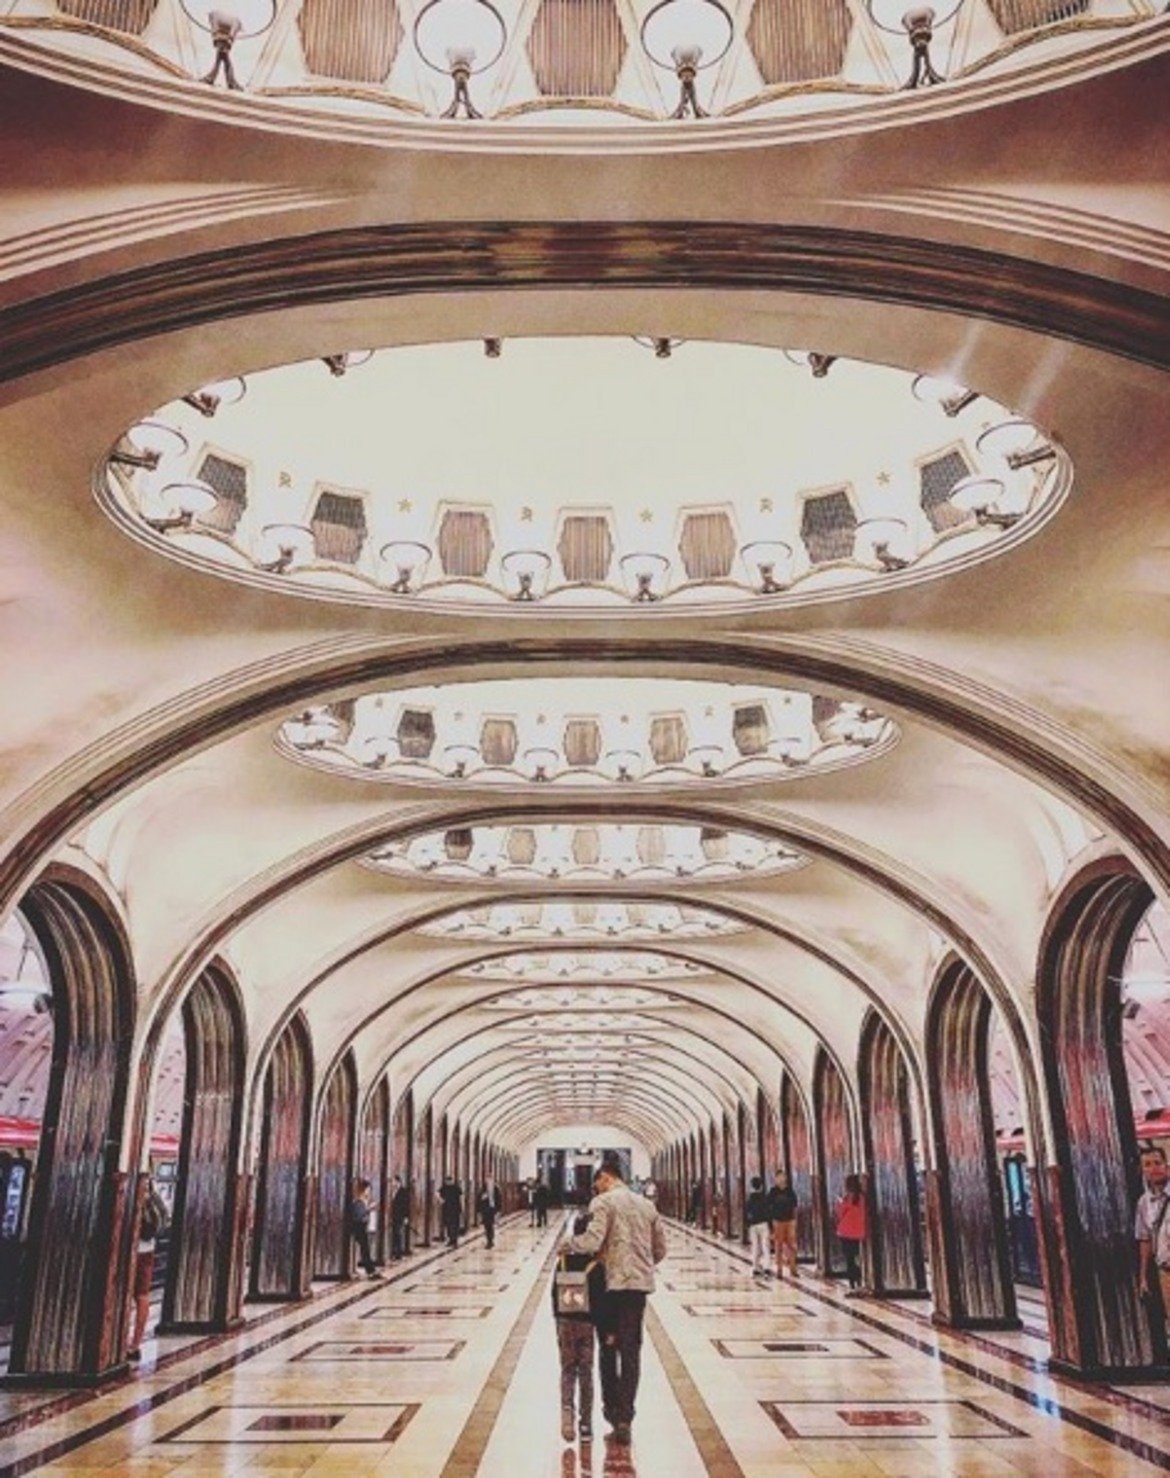  Станция "Маяковска" 

Кръстена е на руския поет Владимир Маяковски. И името, и видът на станцията са вдъхновени от футуризма на твореца. Това е и една от най-известните спирки на метрото не само в Русия, но и в целия свят, заради 34-те си мозайки на тавана, които представят 24 часа в Съветския свят. 

Има изобразени самолети, жътва, полет над "Спаската кула" и други. "Маяковска" е първата станция в страната, която има арка само с два реда пилони, достатъчни, за да поддържат конструкцията. Стоманата в основите се използва и в авиоконструкциите, защото е лесна за манипулации. 

След това много други спирки са решени в същия вид. По време на Втората световна война е използвана за команден пункт на военно-въздушните войски. Стилът е "ар деко" с мраморни стени и розови мраморни панели по пода. Дълбочината е 33 метра.